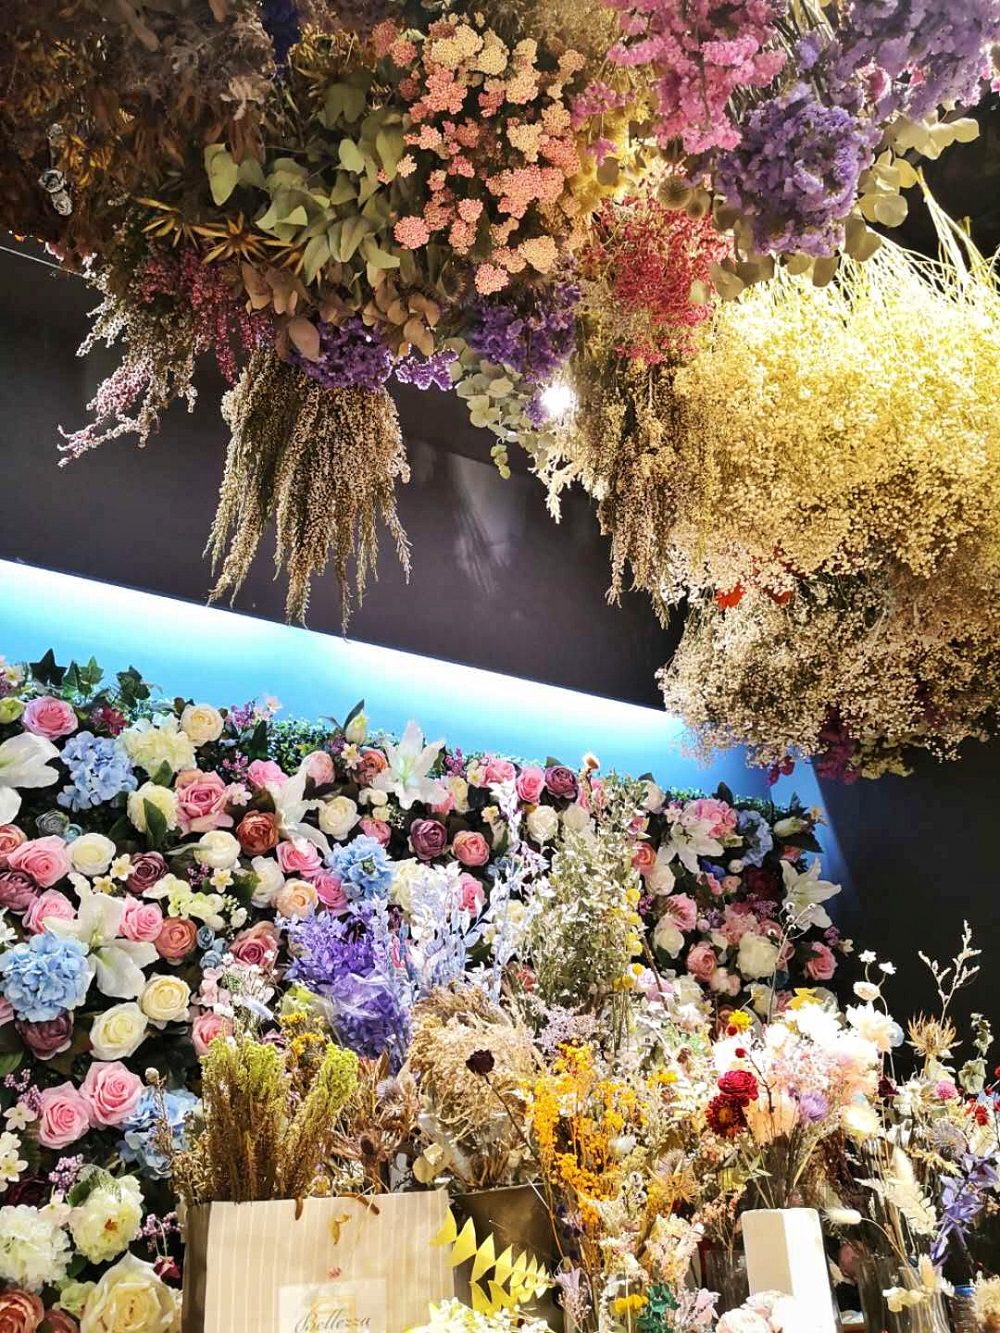 抬頭看看嚐花閣的天花板，真的是天「花」板啊！滿滿倒掛著的乾燥花束，光是滿天星就有好多顏色是外面買不到的！